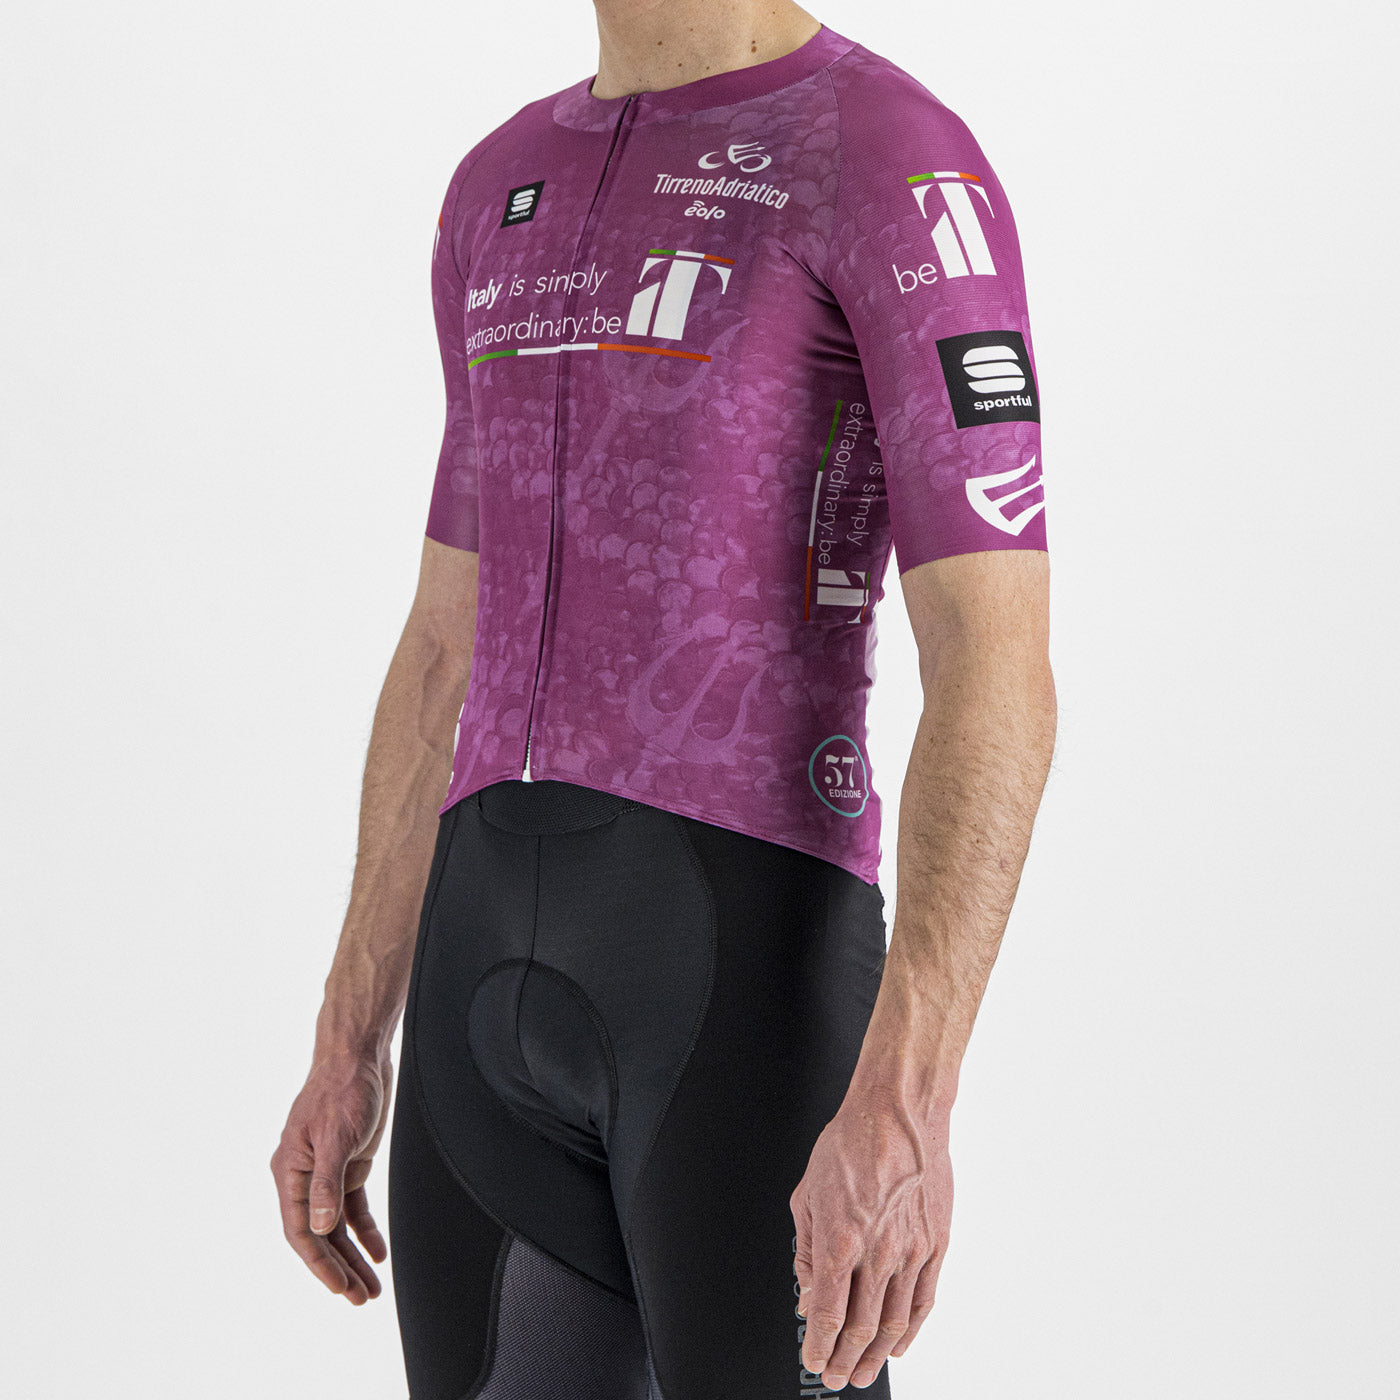 Tirreno Adriatico jersey - Cyclamen